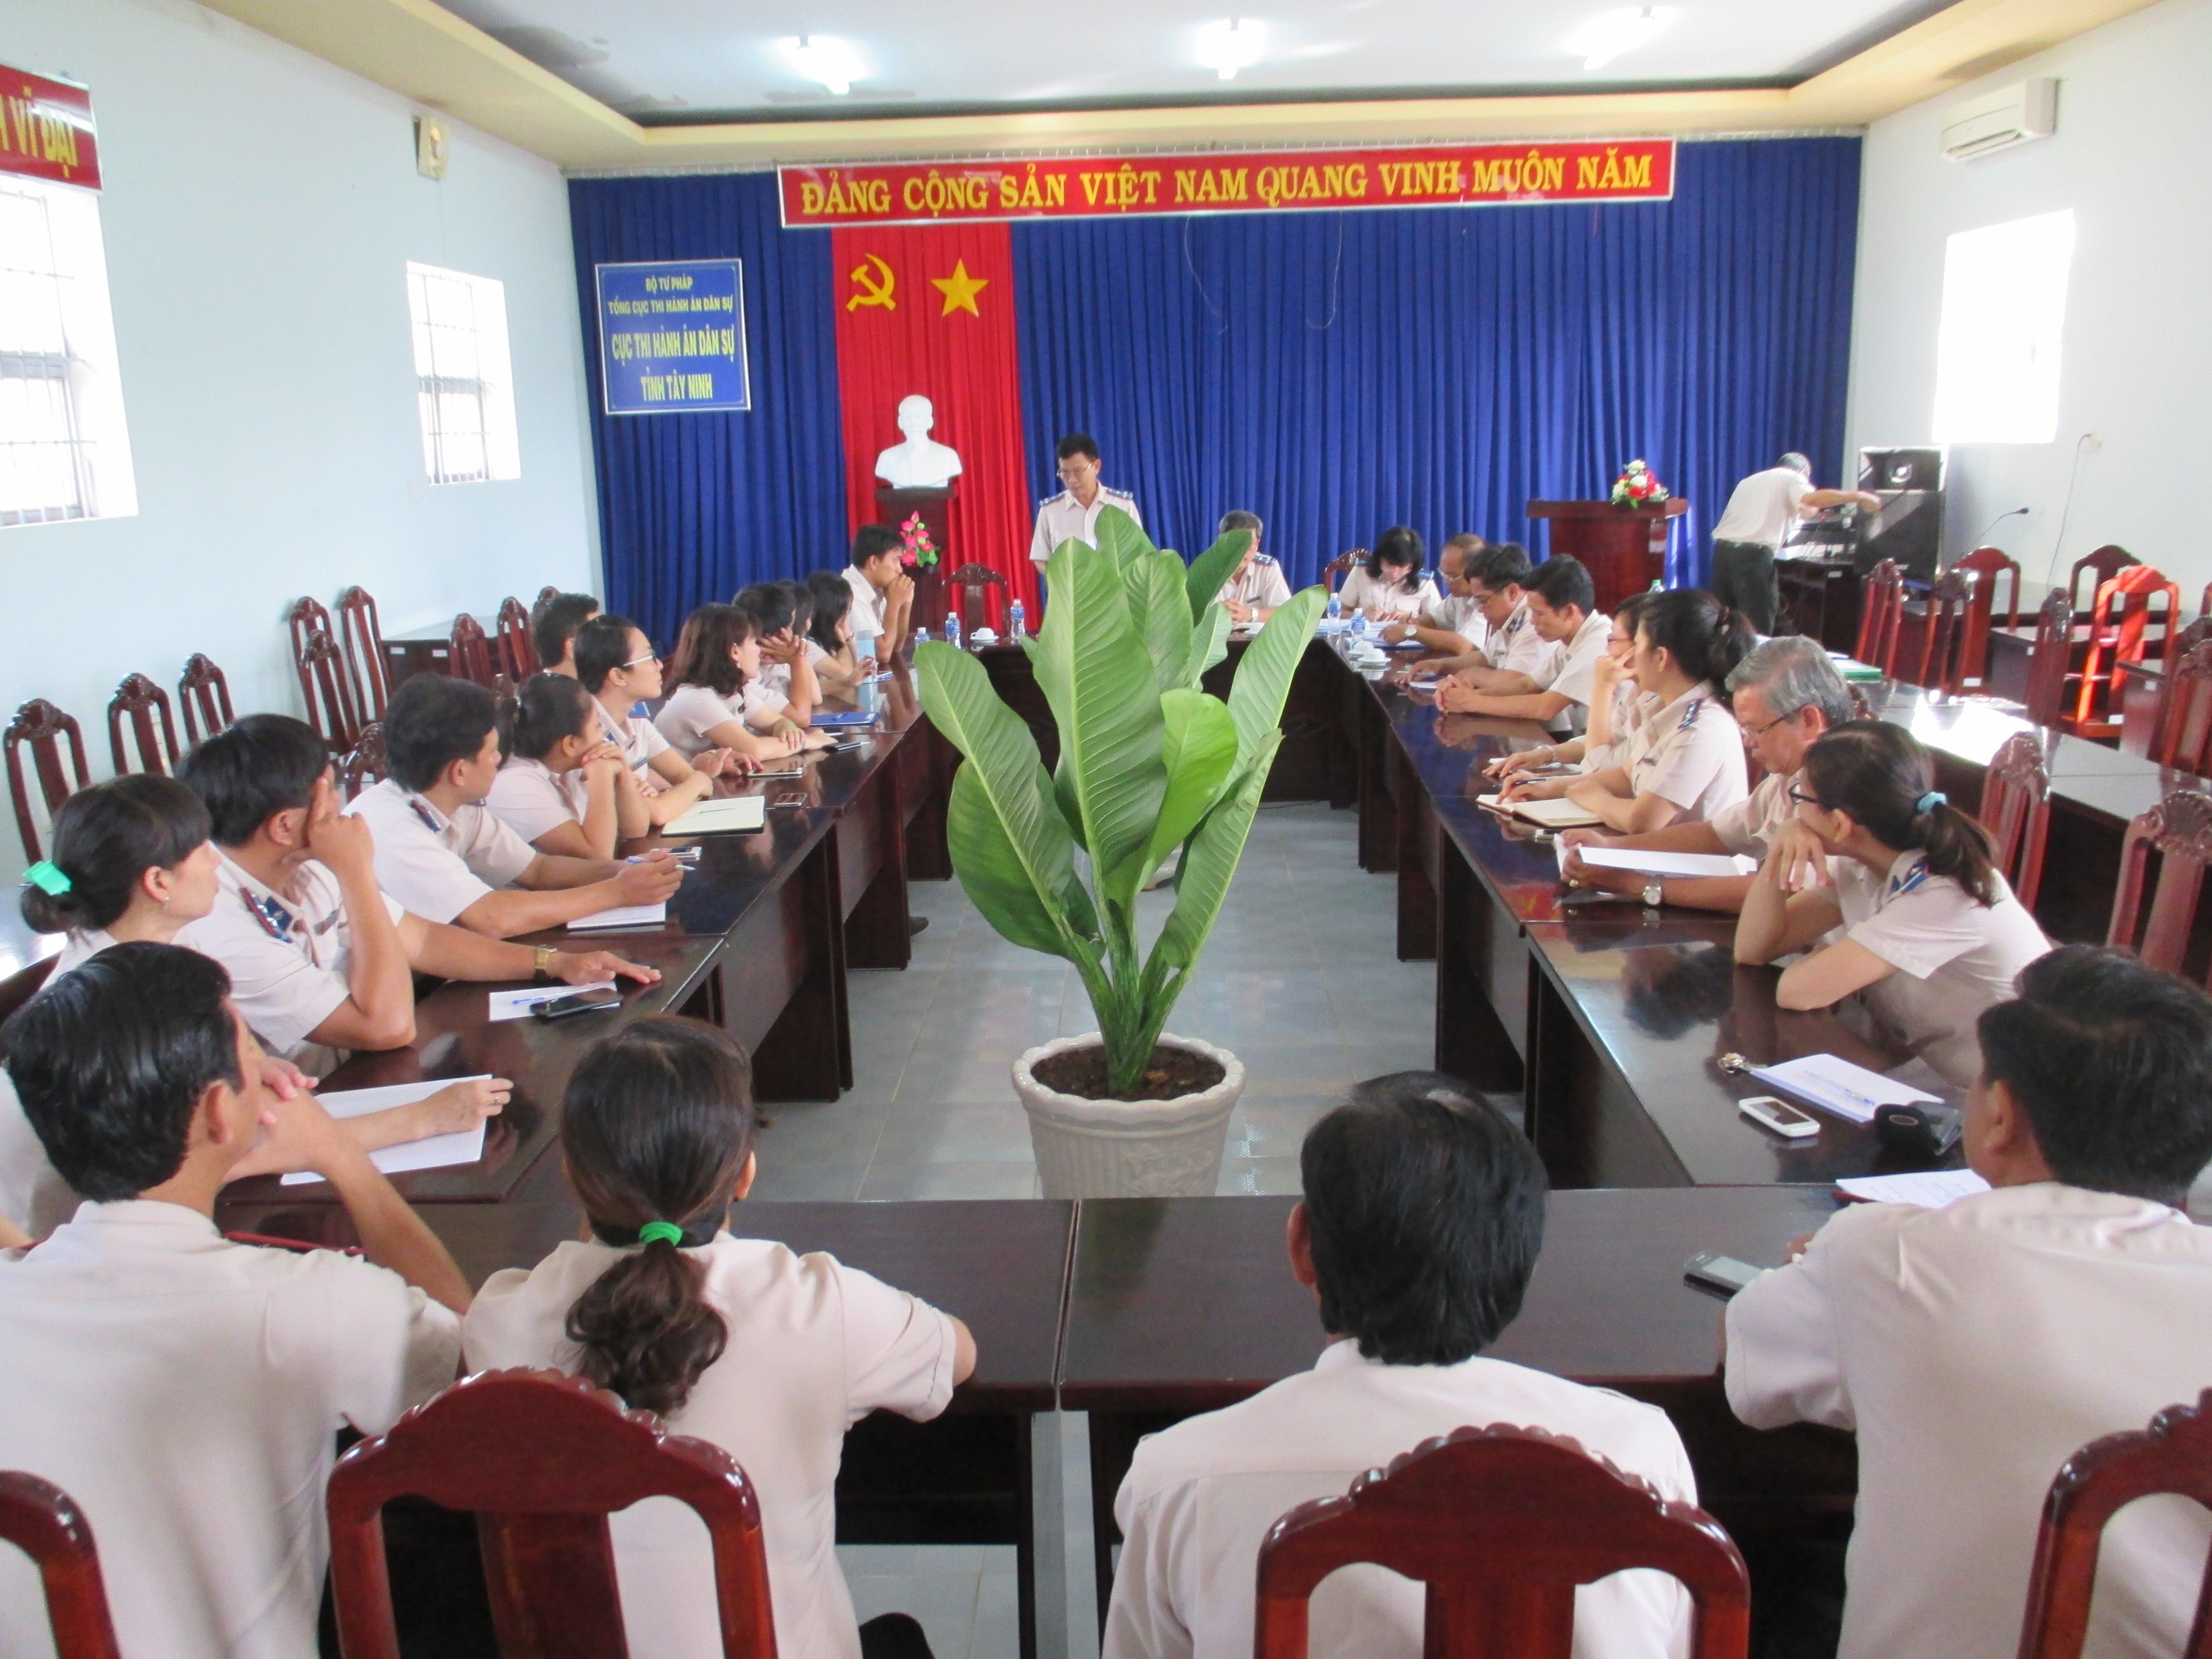 Cục Thi hành án dân sự tỉnh Tây Ninh tổ chức thực hiện công tác quy hoạch cán bộ lãnh đạo Cục giai đoạn 2015-2020 (2016) và giai đoạn 2020 - 2025